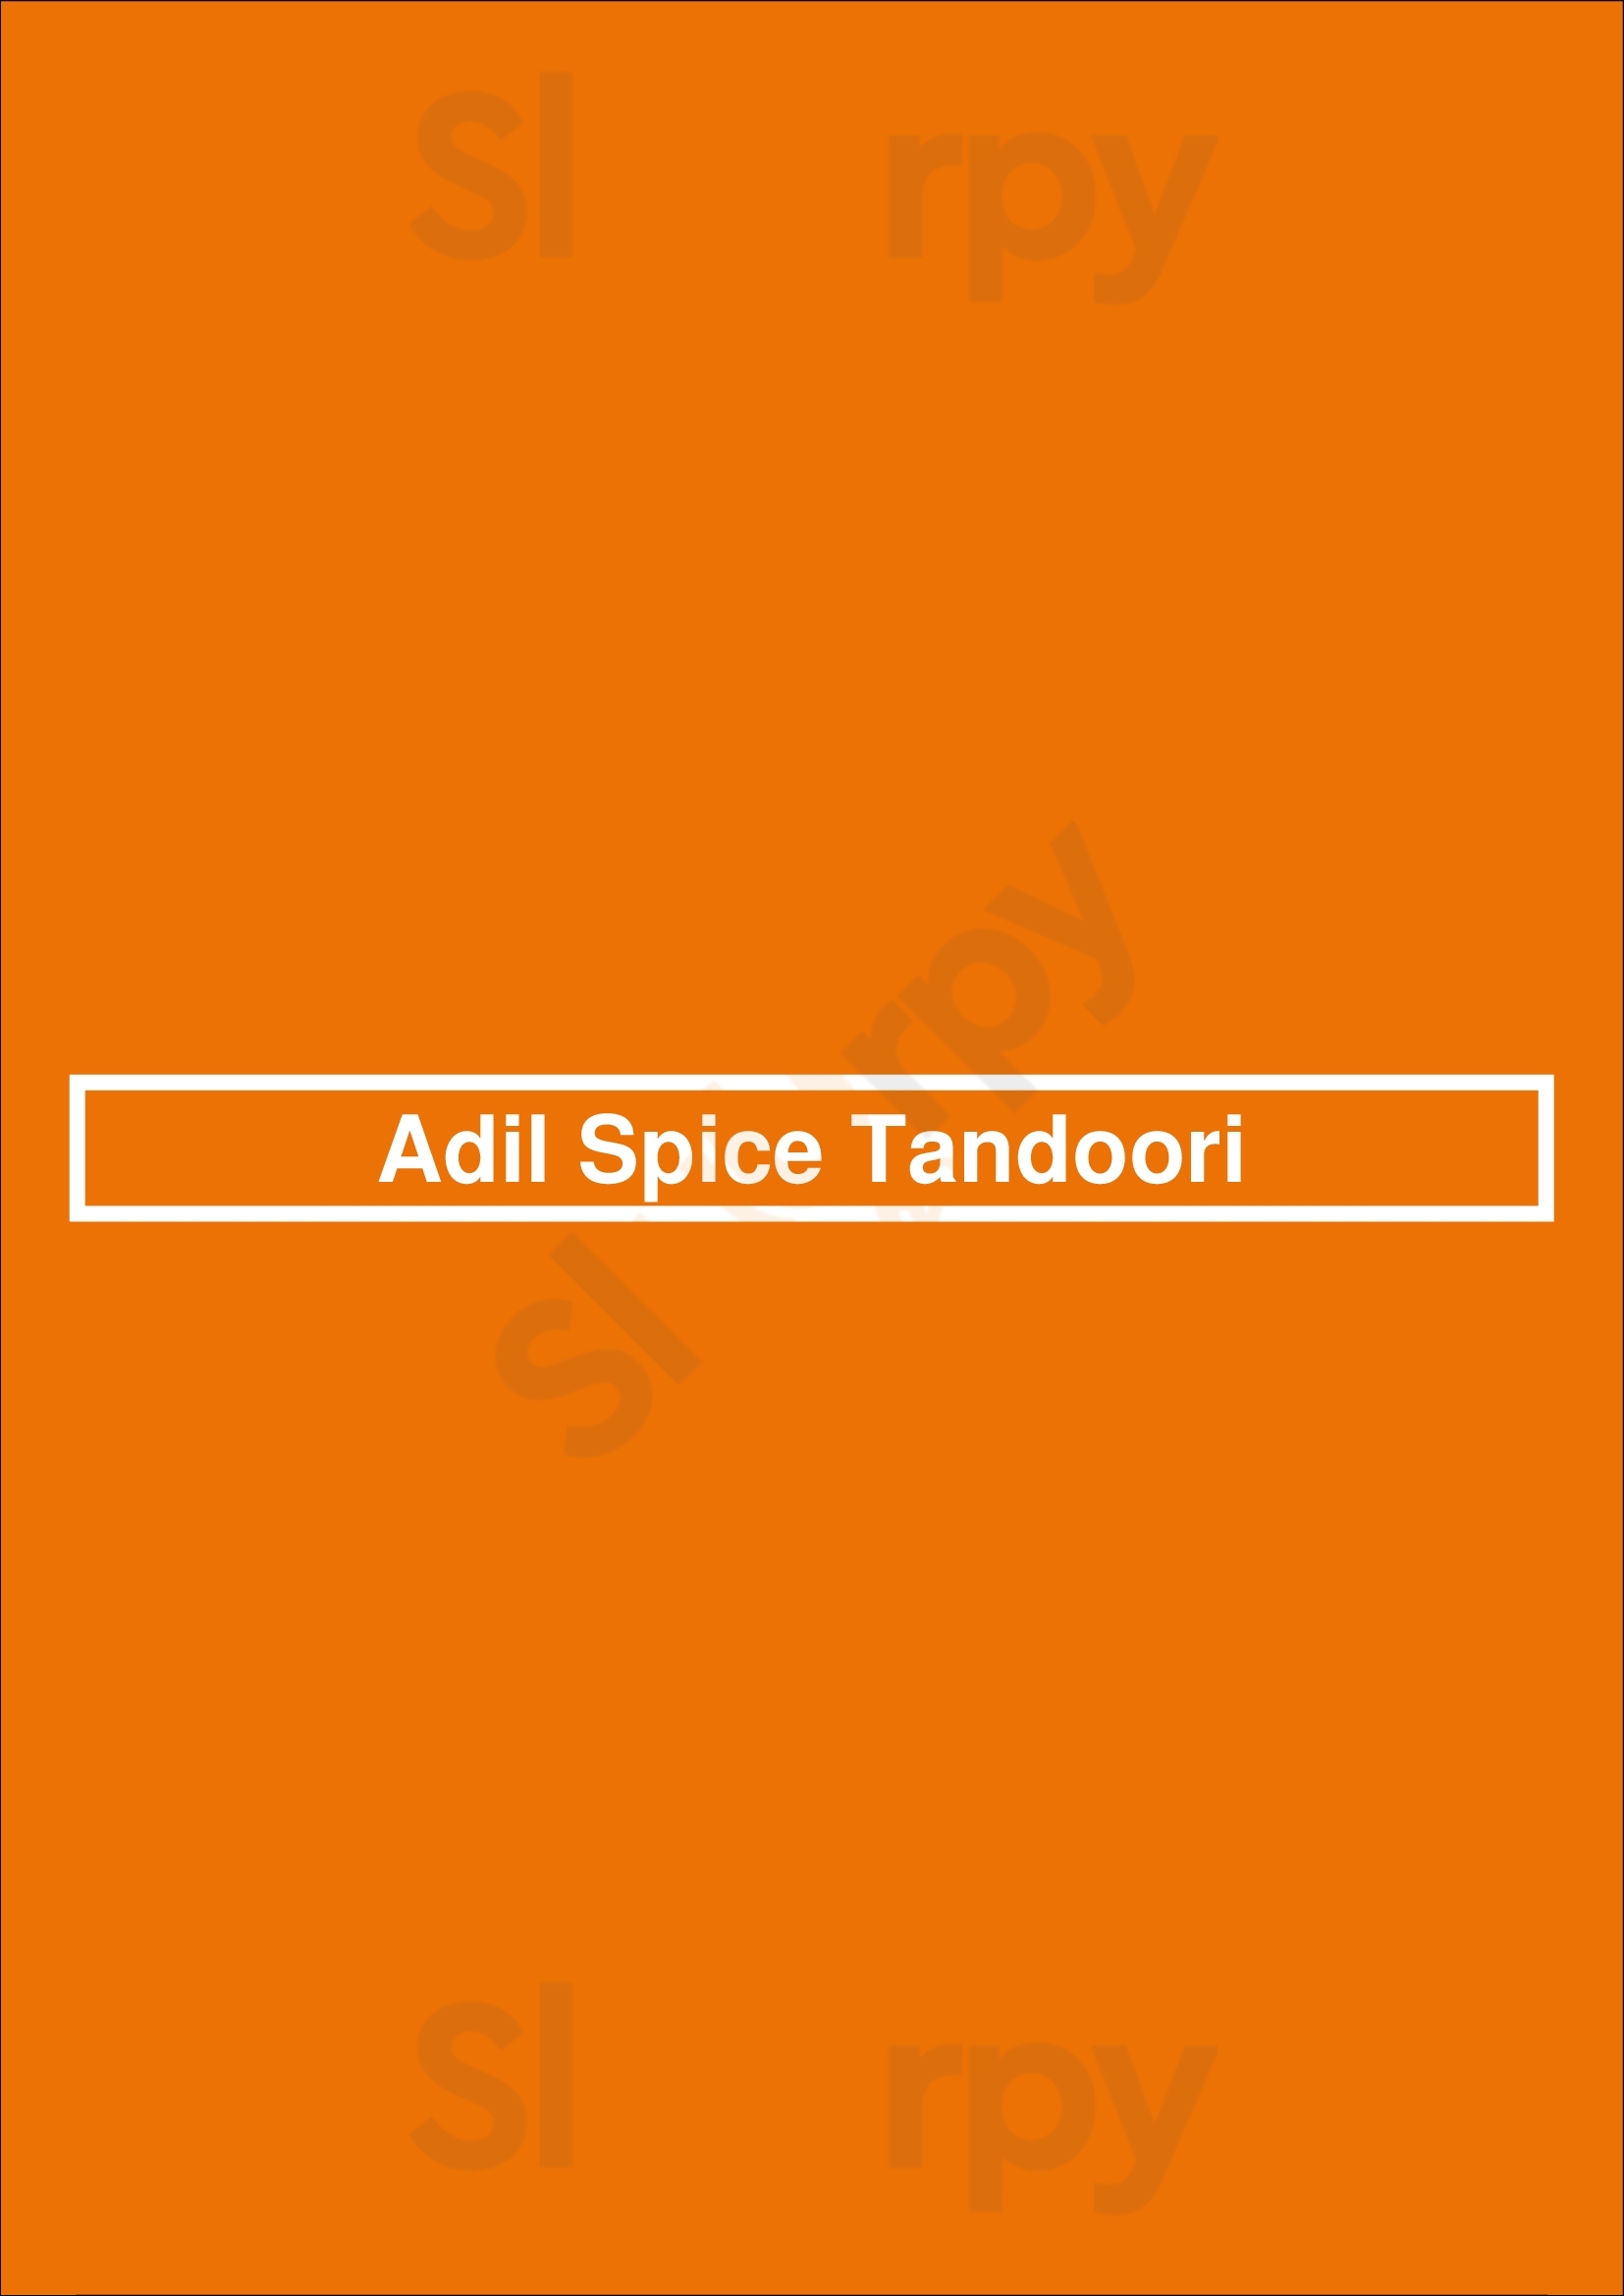 Adil Spice Tandoori Romford Menu - 1